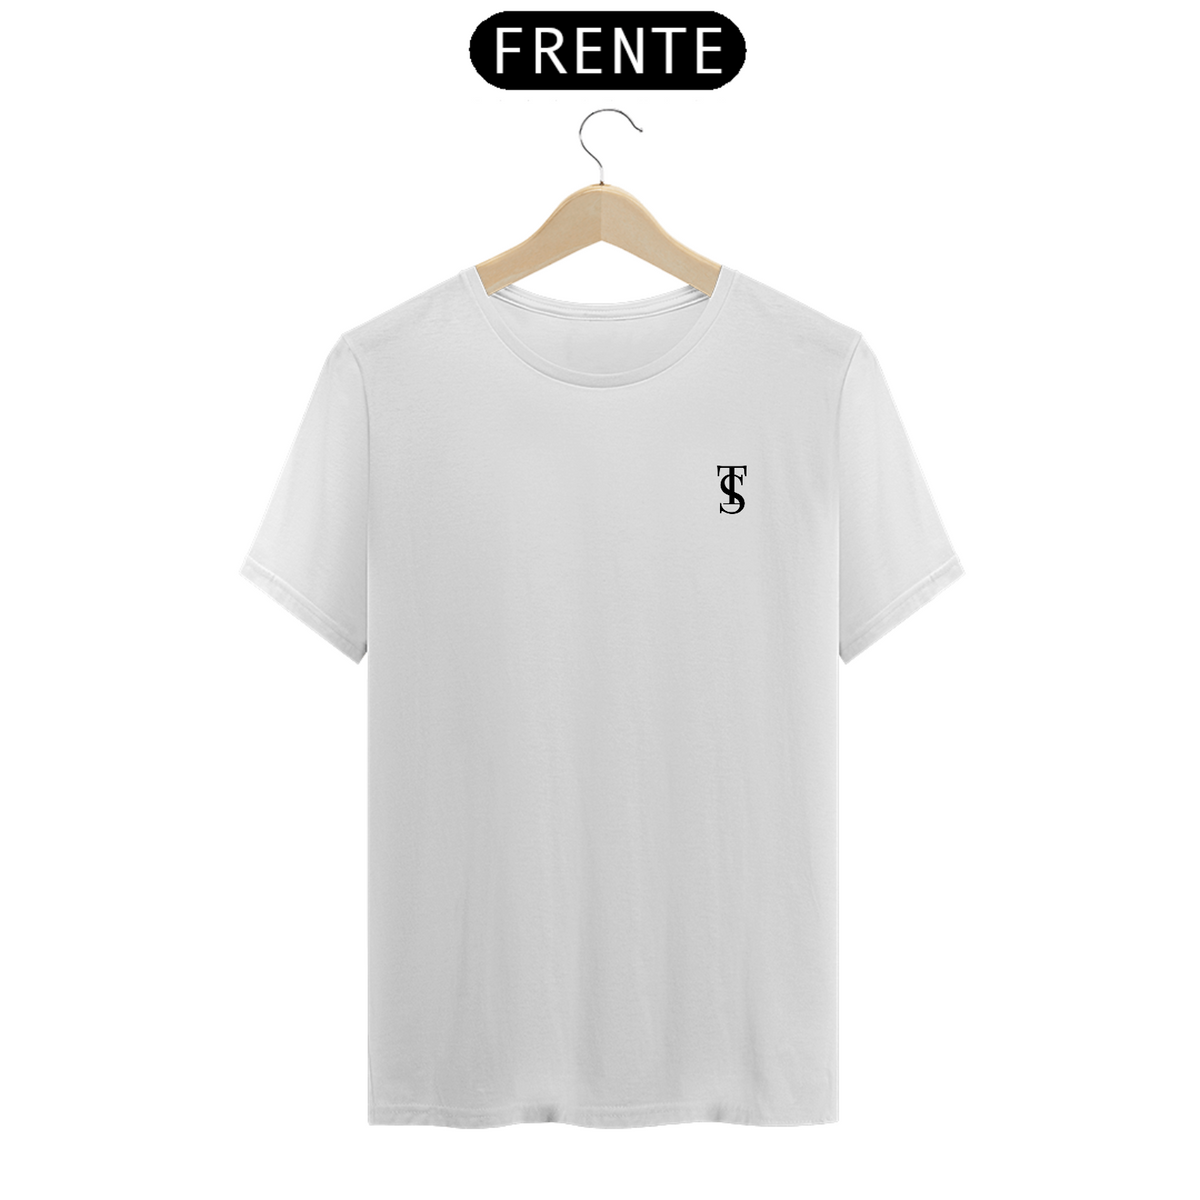 Nome do produto: Camiseta linha PRIME Branca